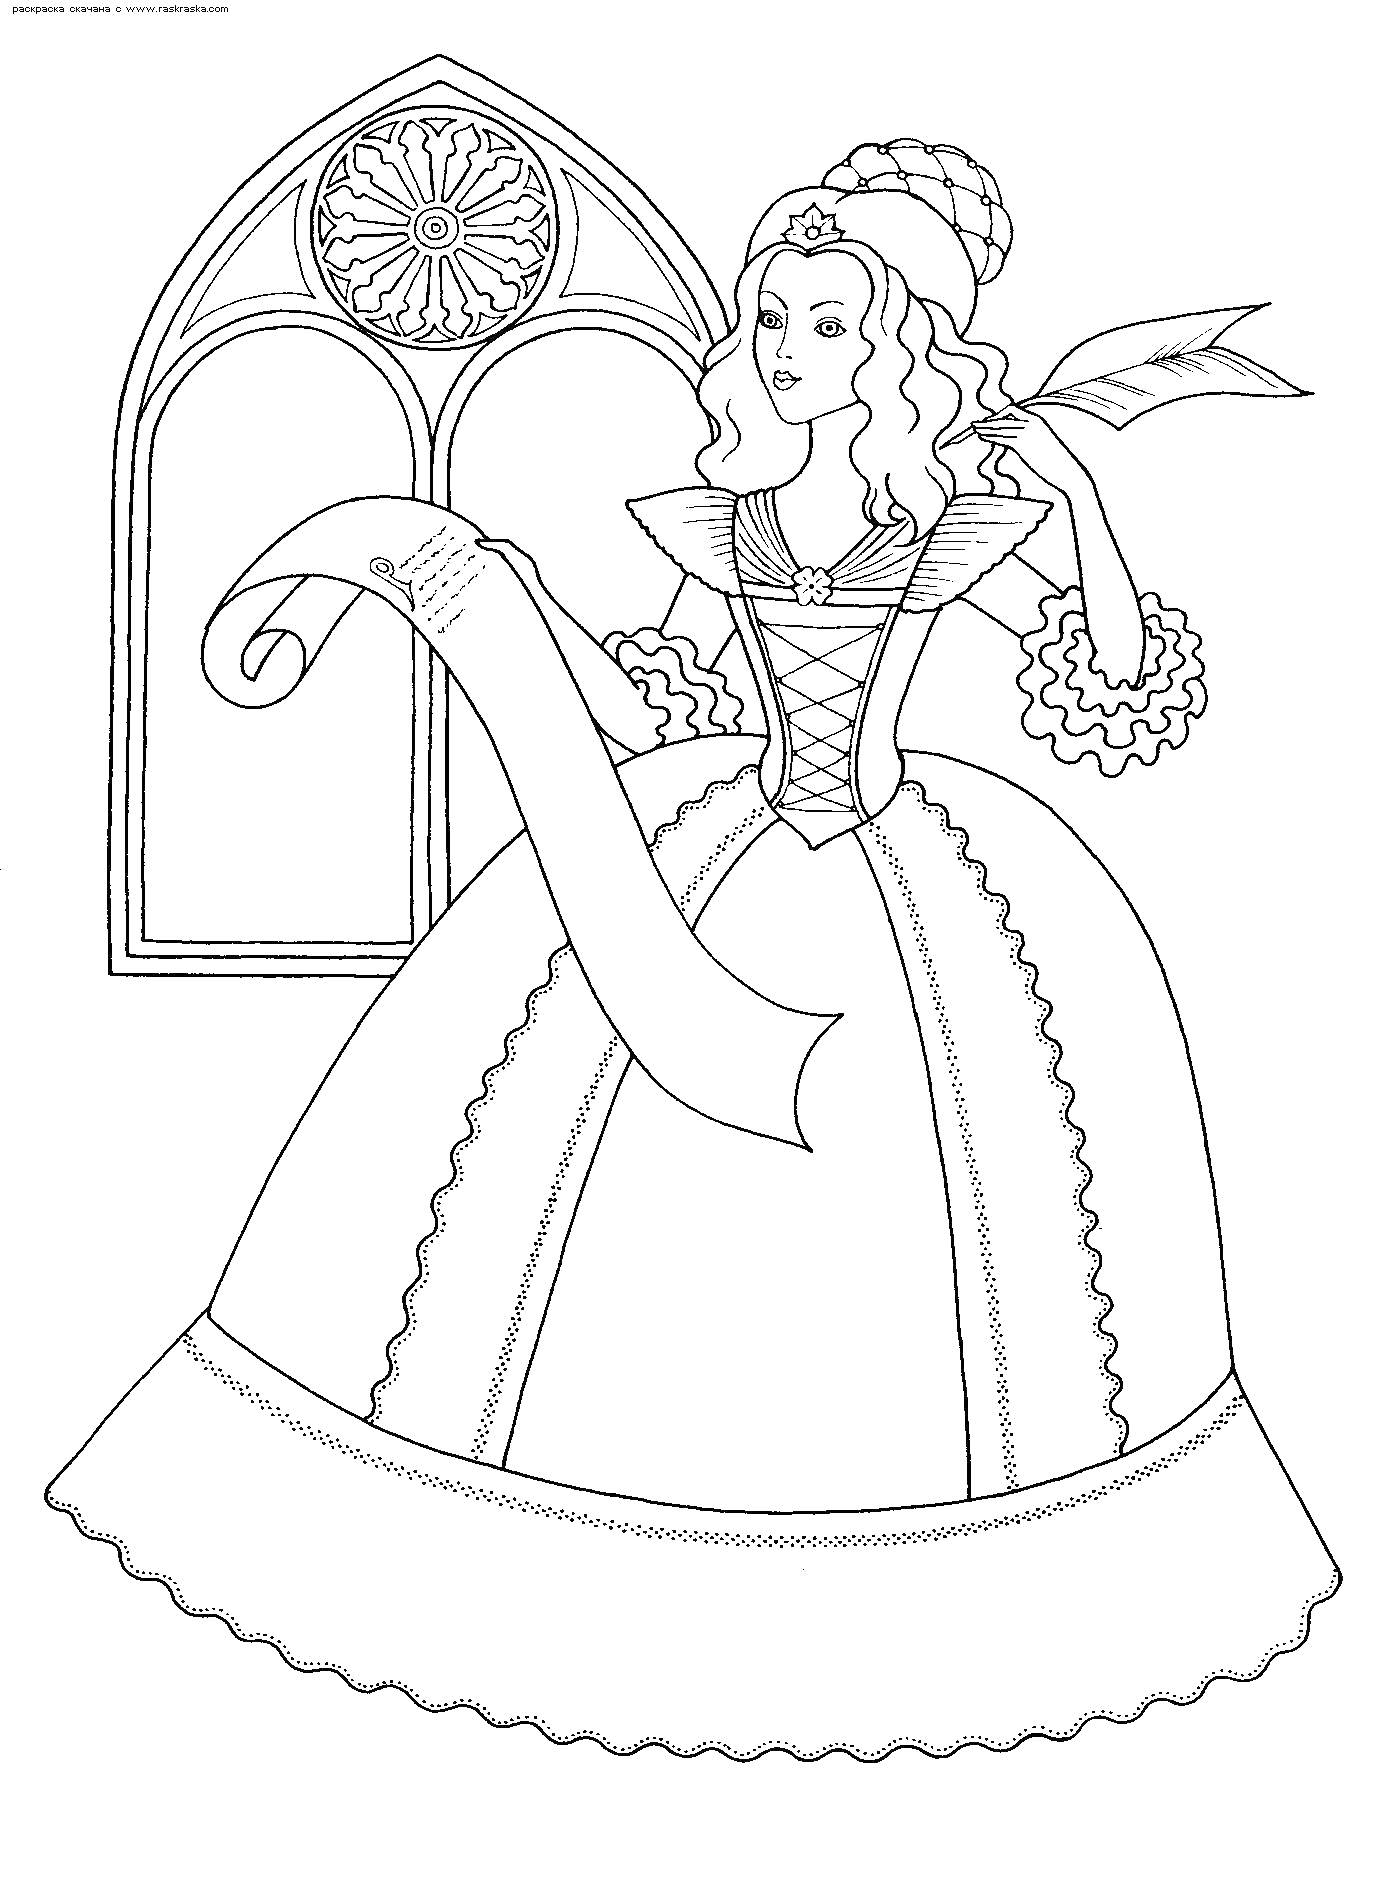 Принцесса в замке с длинным свитком у окна